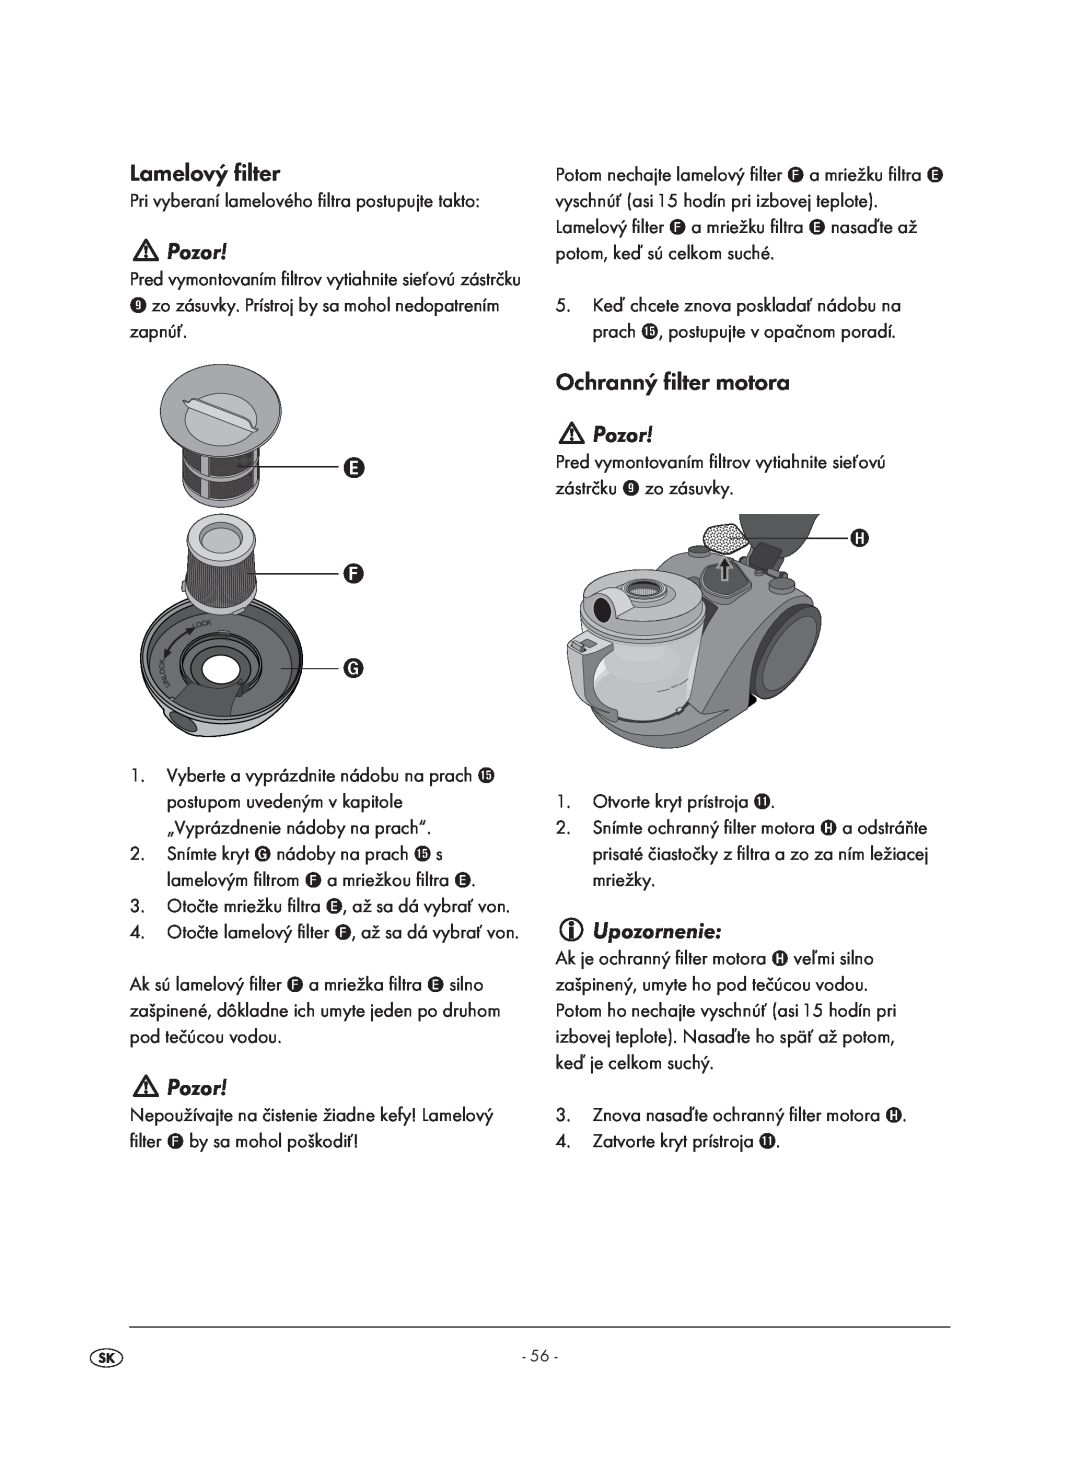 Kompernass KH 1410 operating instructions Lamelový filter, Pozor, Ochranný filter motora, Upozornenie 